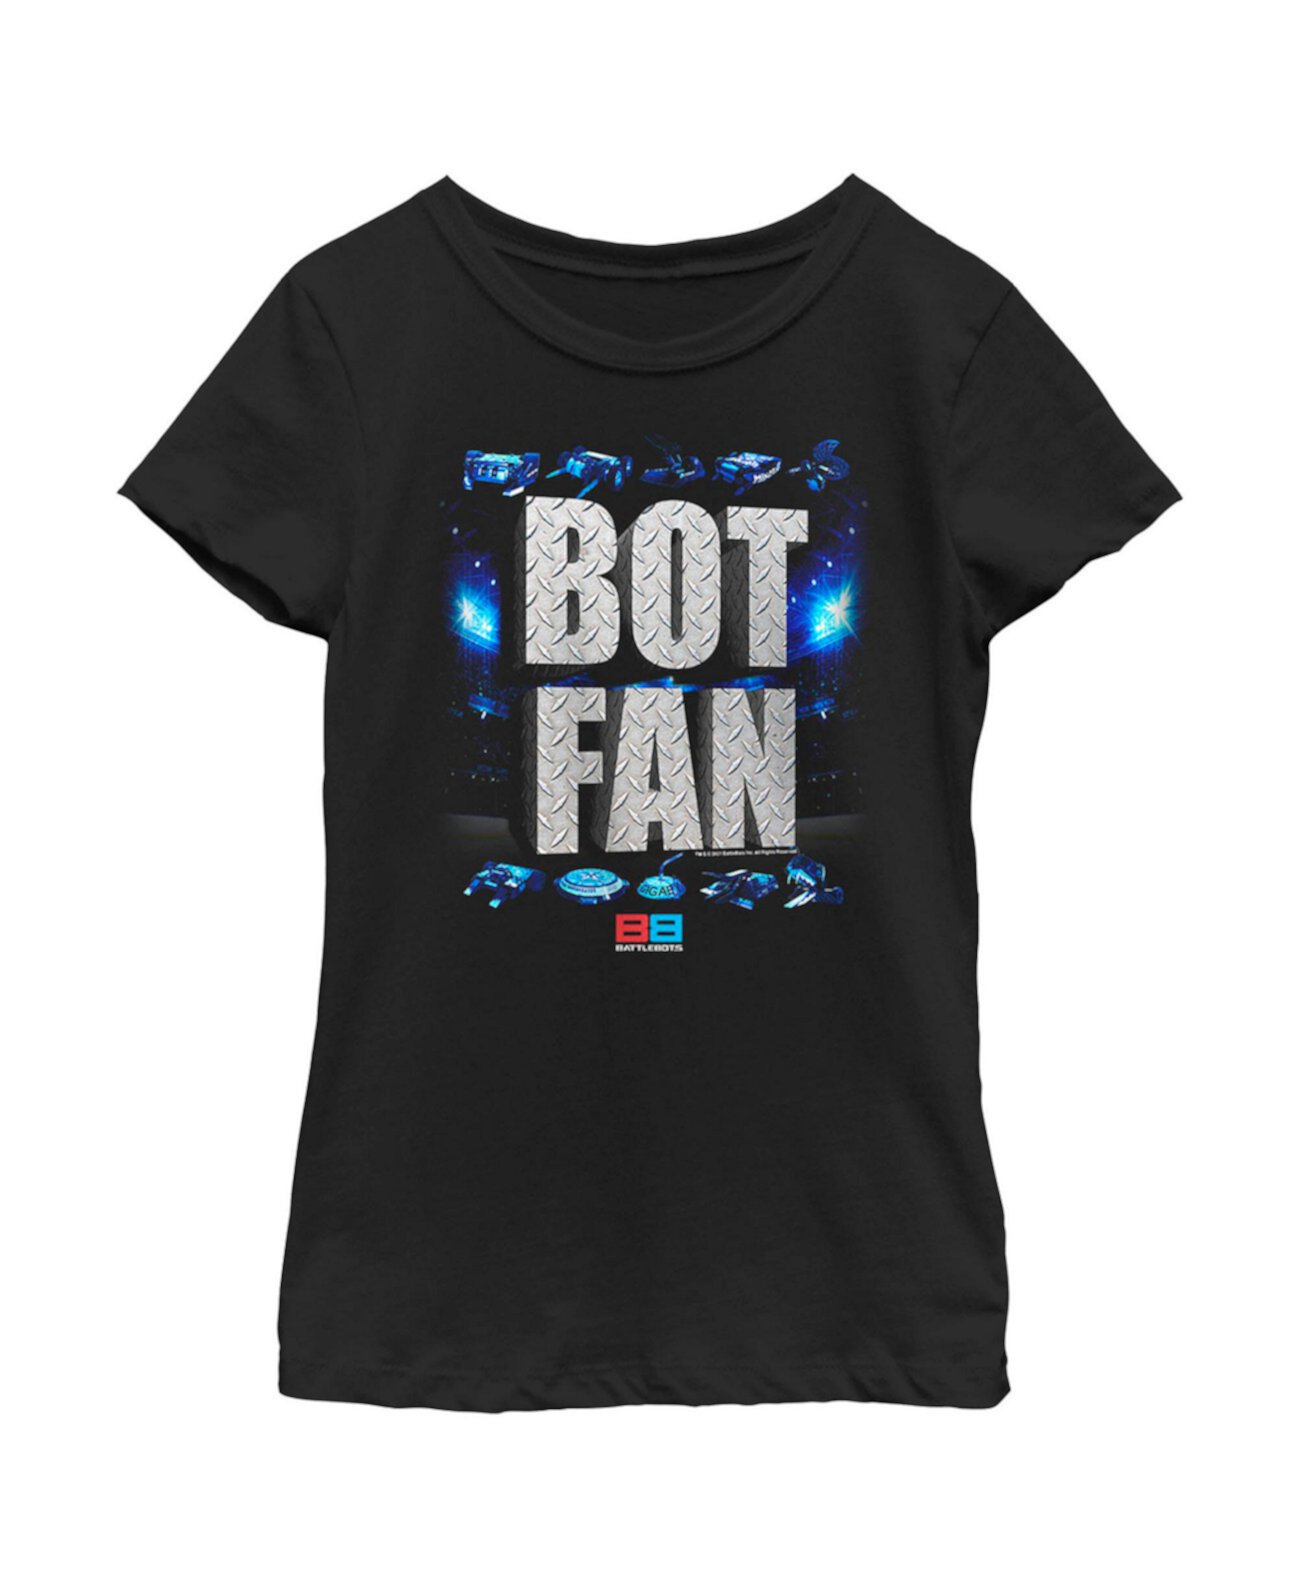 Детская футболка с надписью «Bot Fan» для девочек Battlebots